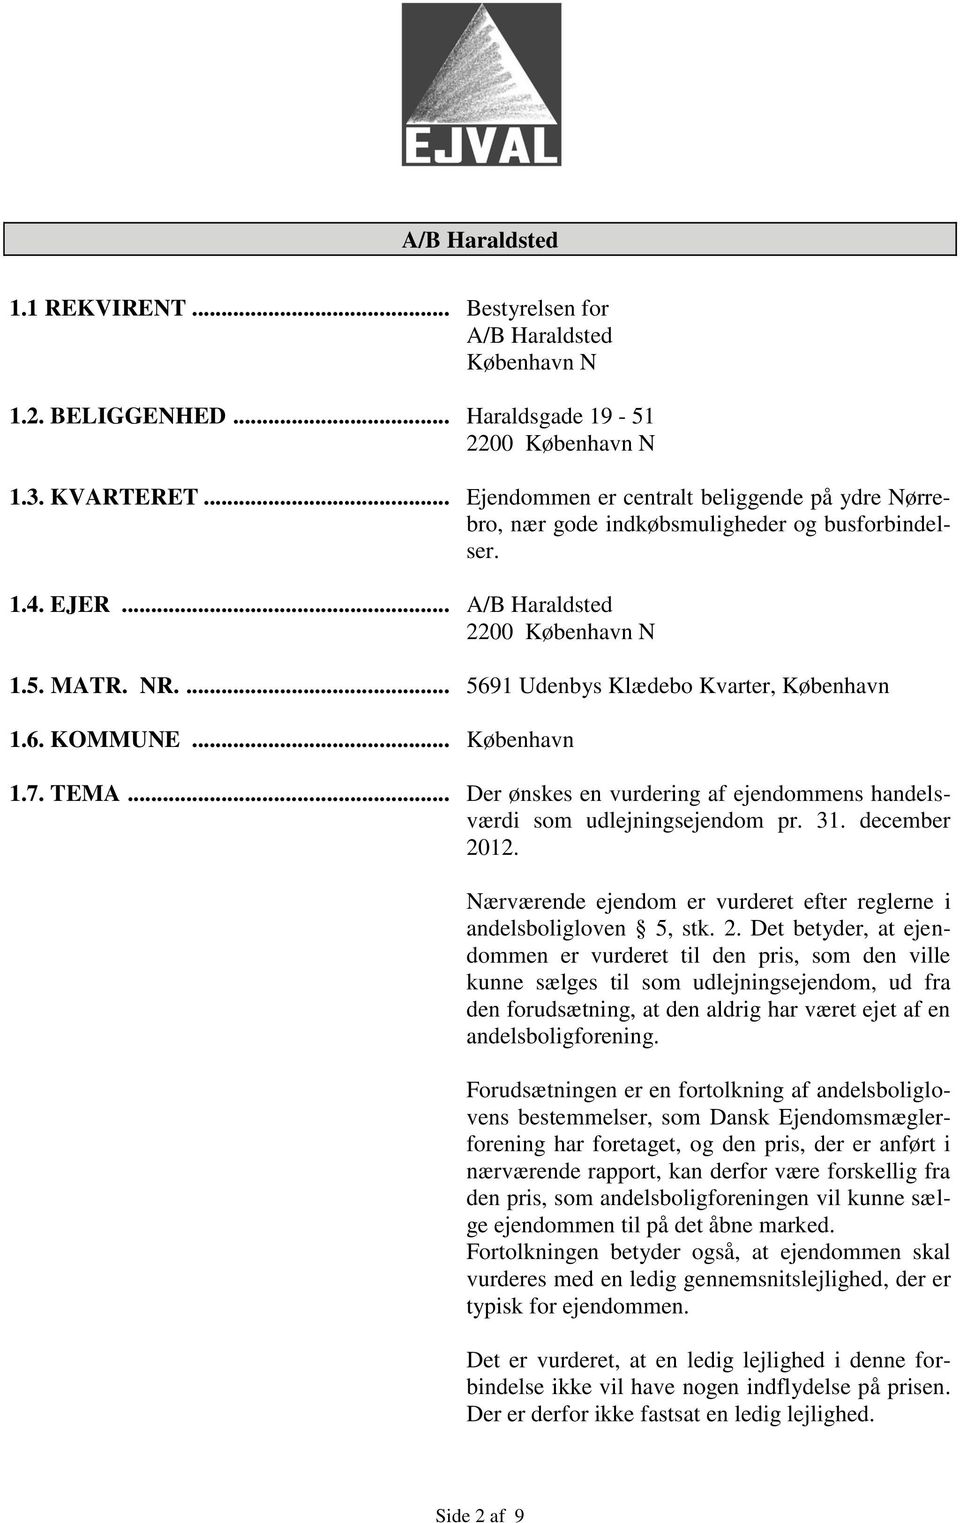 ... 5691 Udenbys Klædebo Kvarter, København 1.6. KOMMUNE... København 1.7. TEMA... Der ønskes en vurdering af ejendommens handelsværdi som udlejningsejendom pr. 31. december 2012.